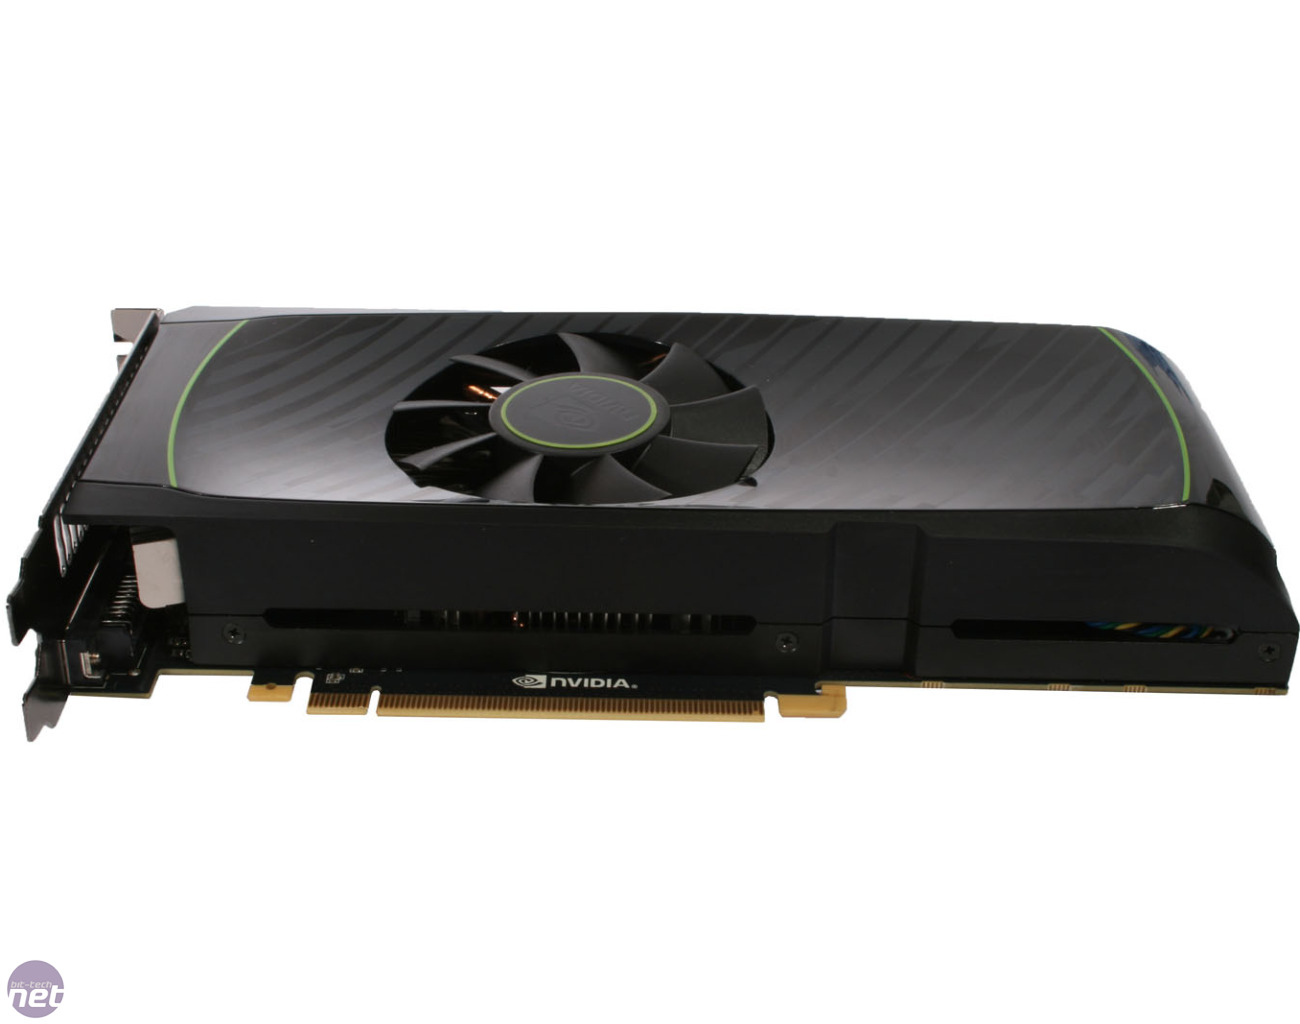 Nvidia Geforce Gtx 560 Ti 1Gb Specs